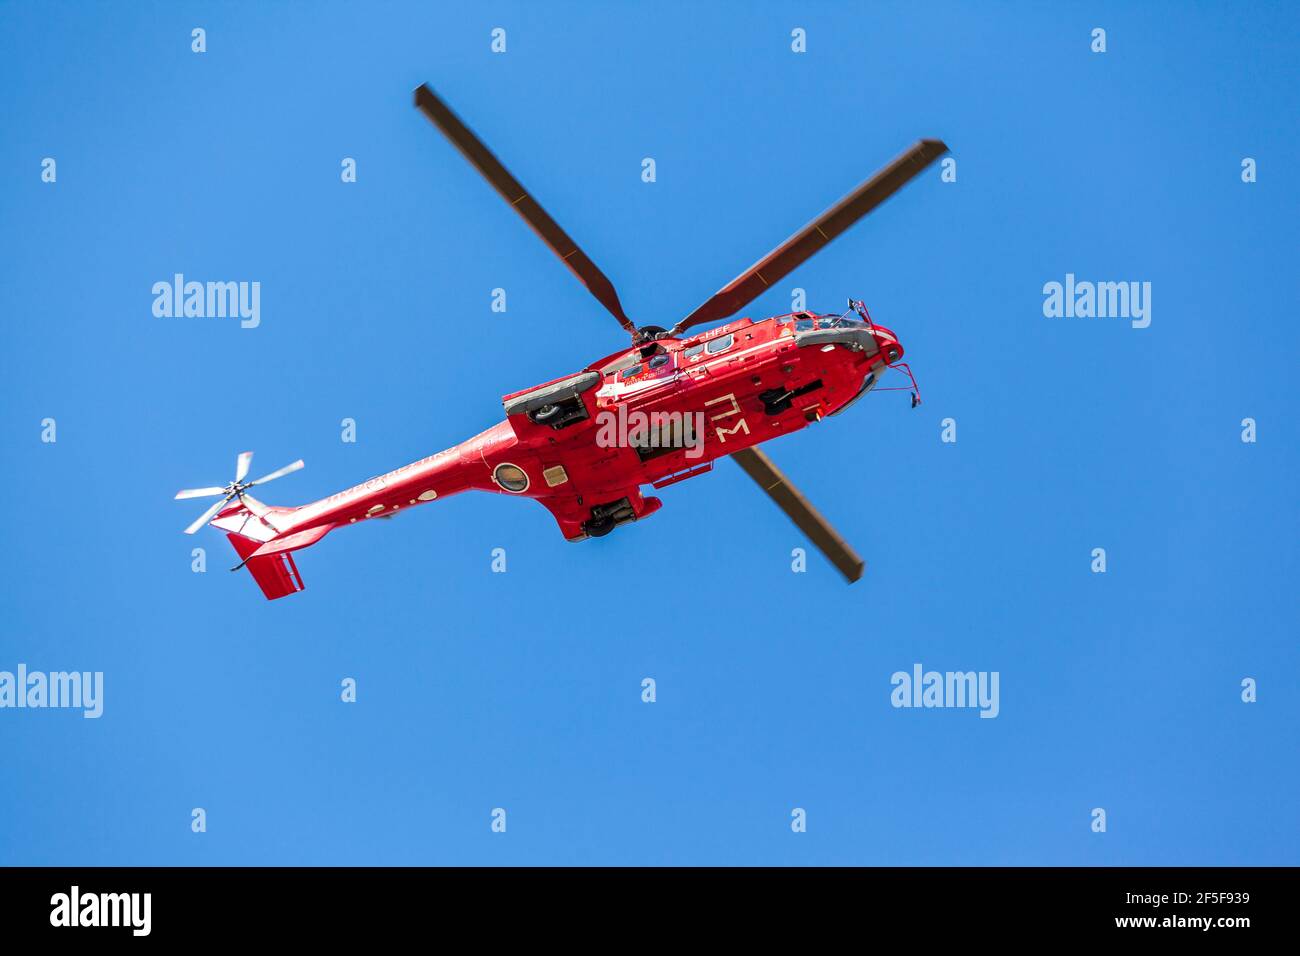 Airbus Helicopters H215, noto anche come S332 Super Puma, del servizio di fuoco ellenico, che sorvola Atene. Foto Stock